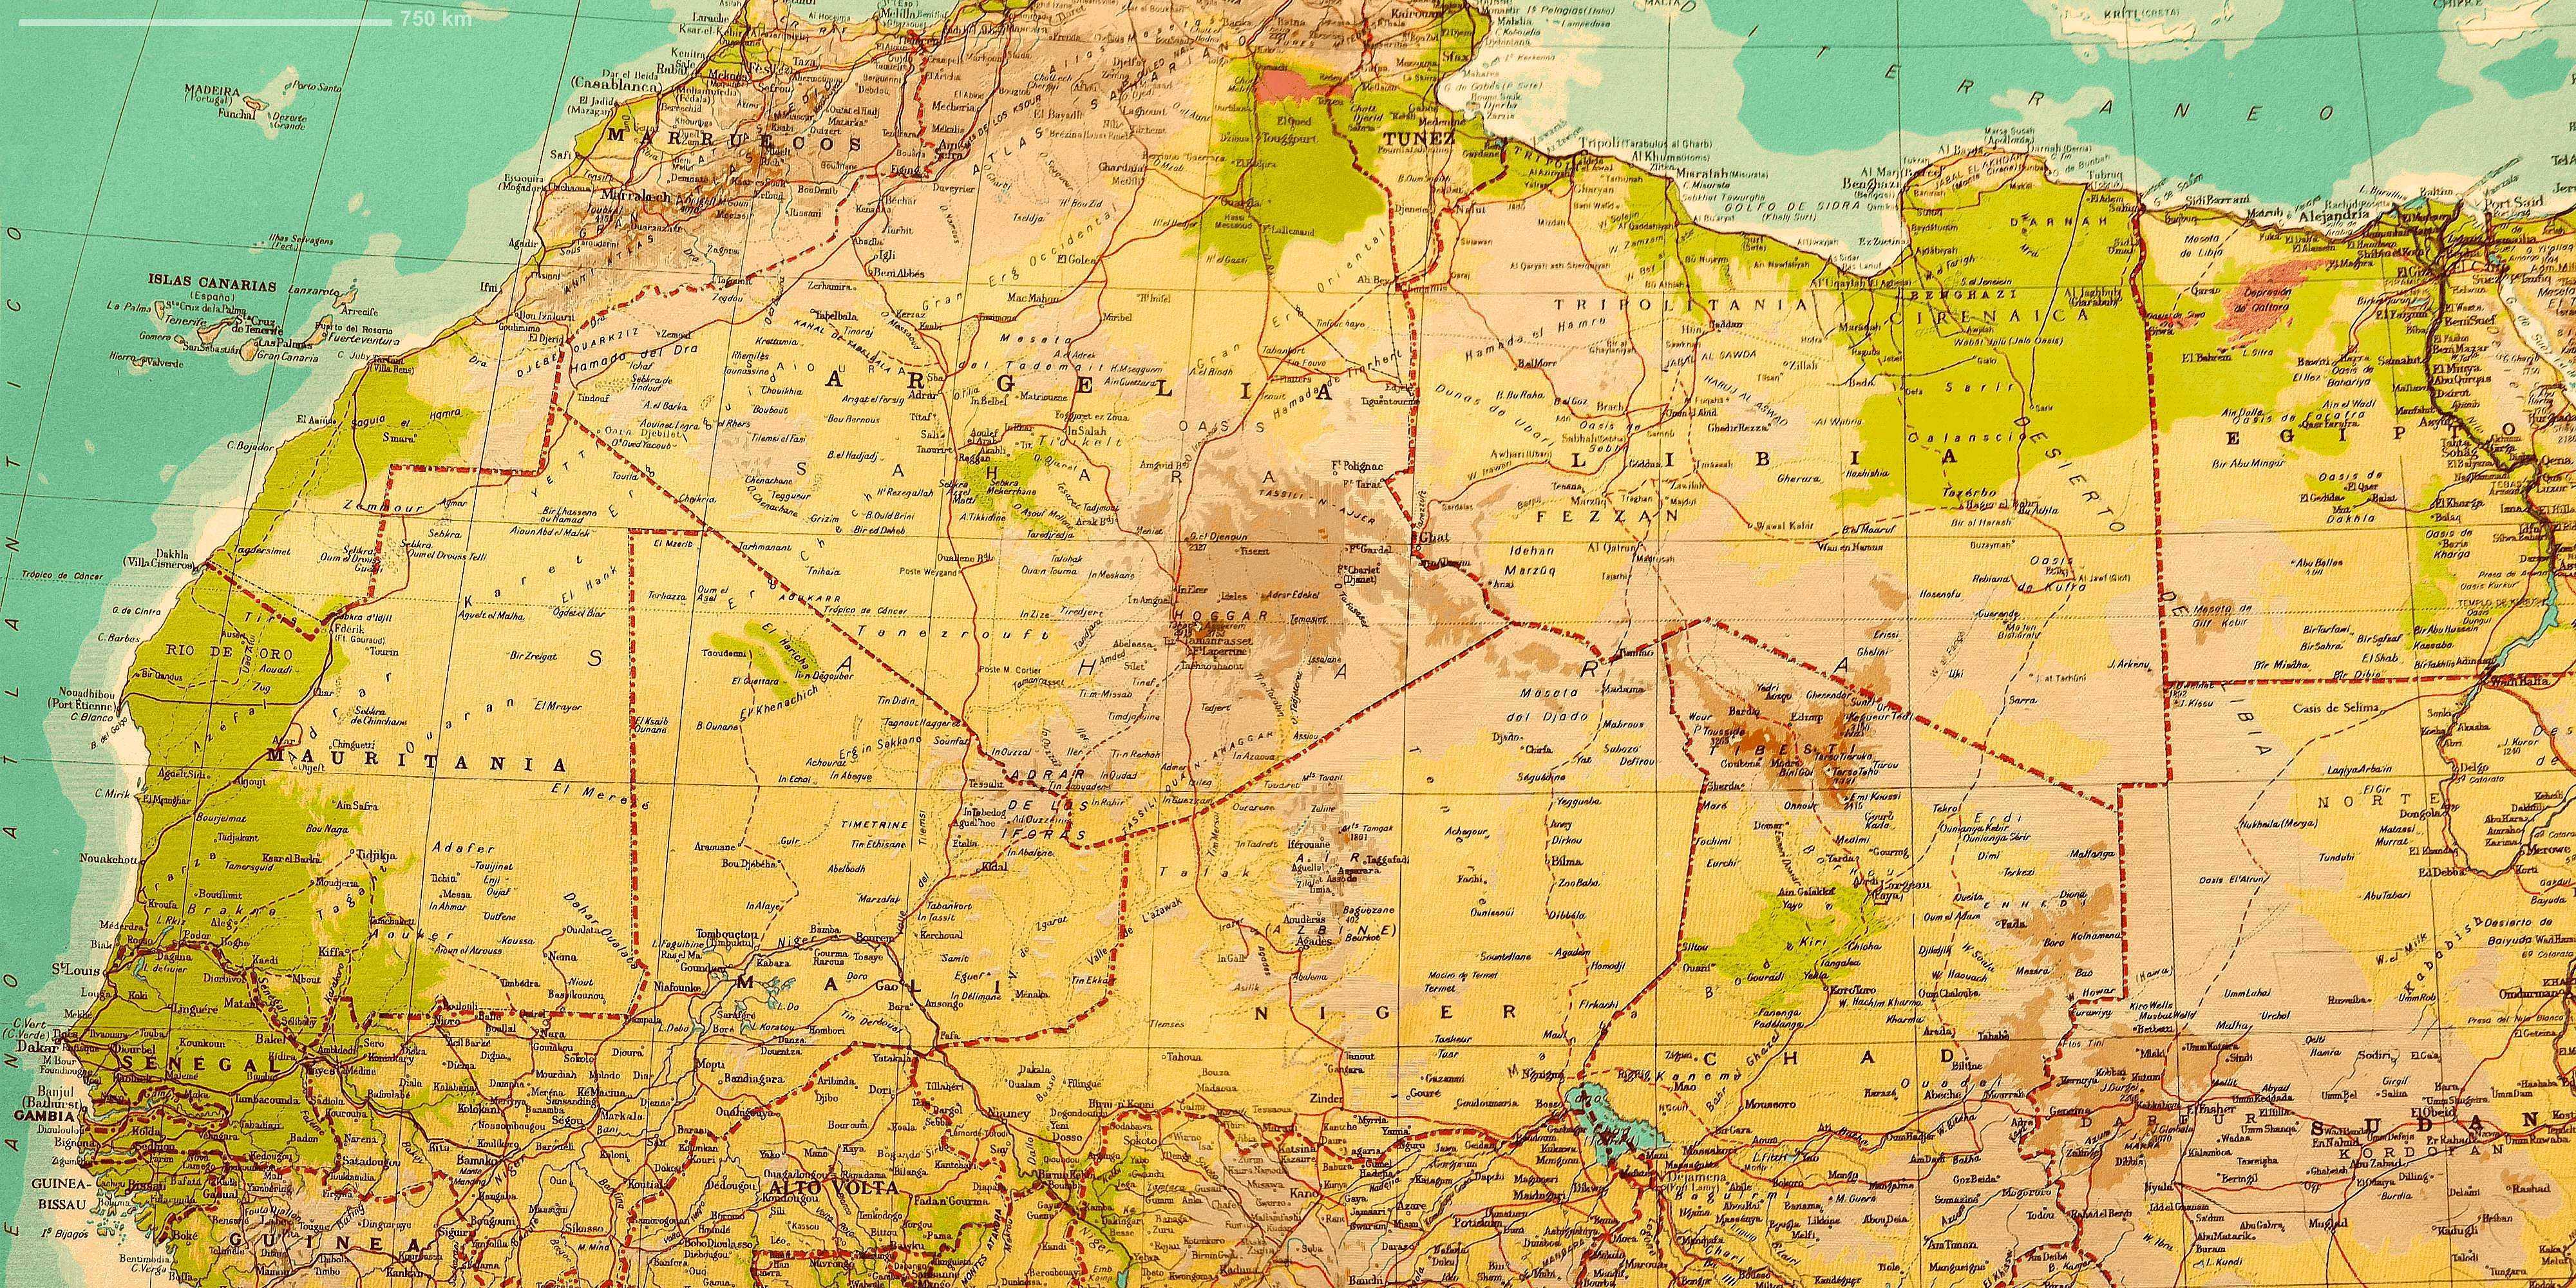 free-photo-sahara-map-africa-african-atlas-free-download-jooinn